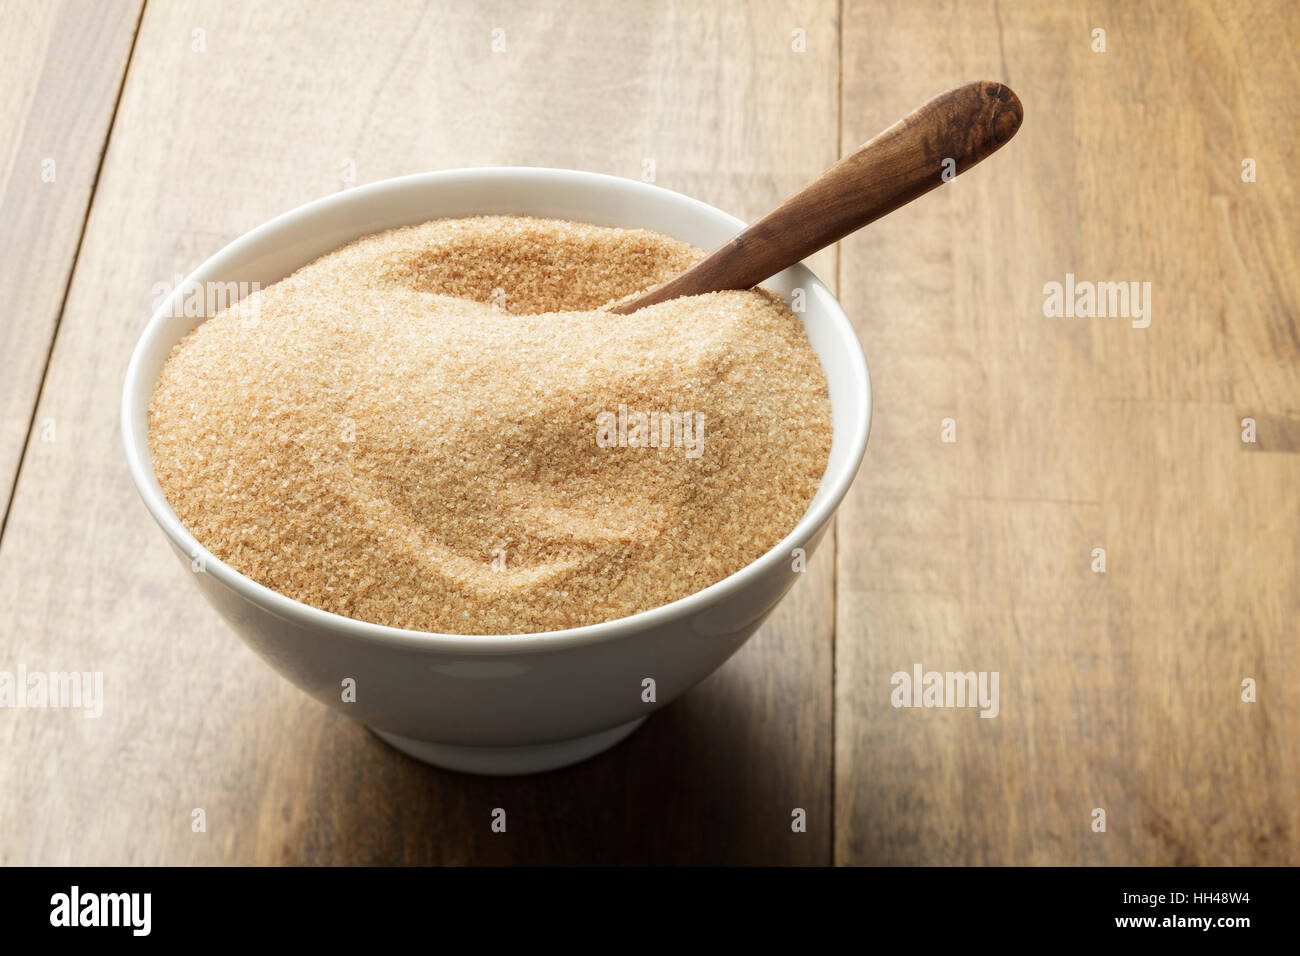 Brauner Zucker in weiße Schüssel auf Holztisch Stockfoto